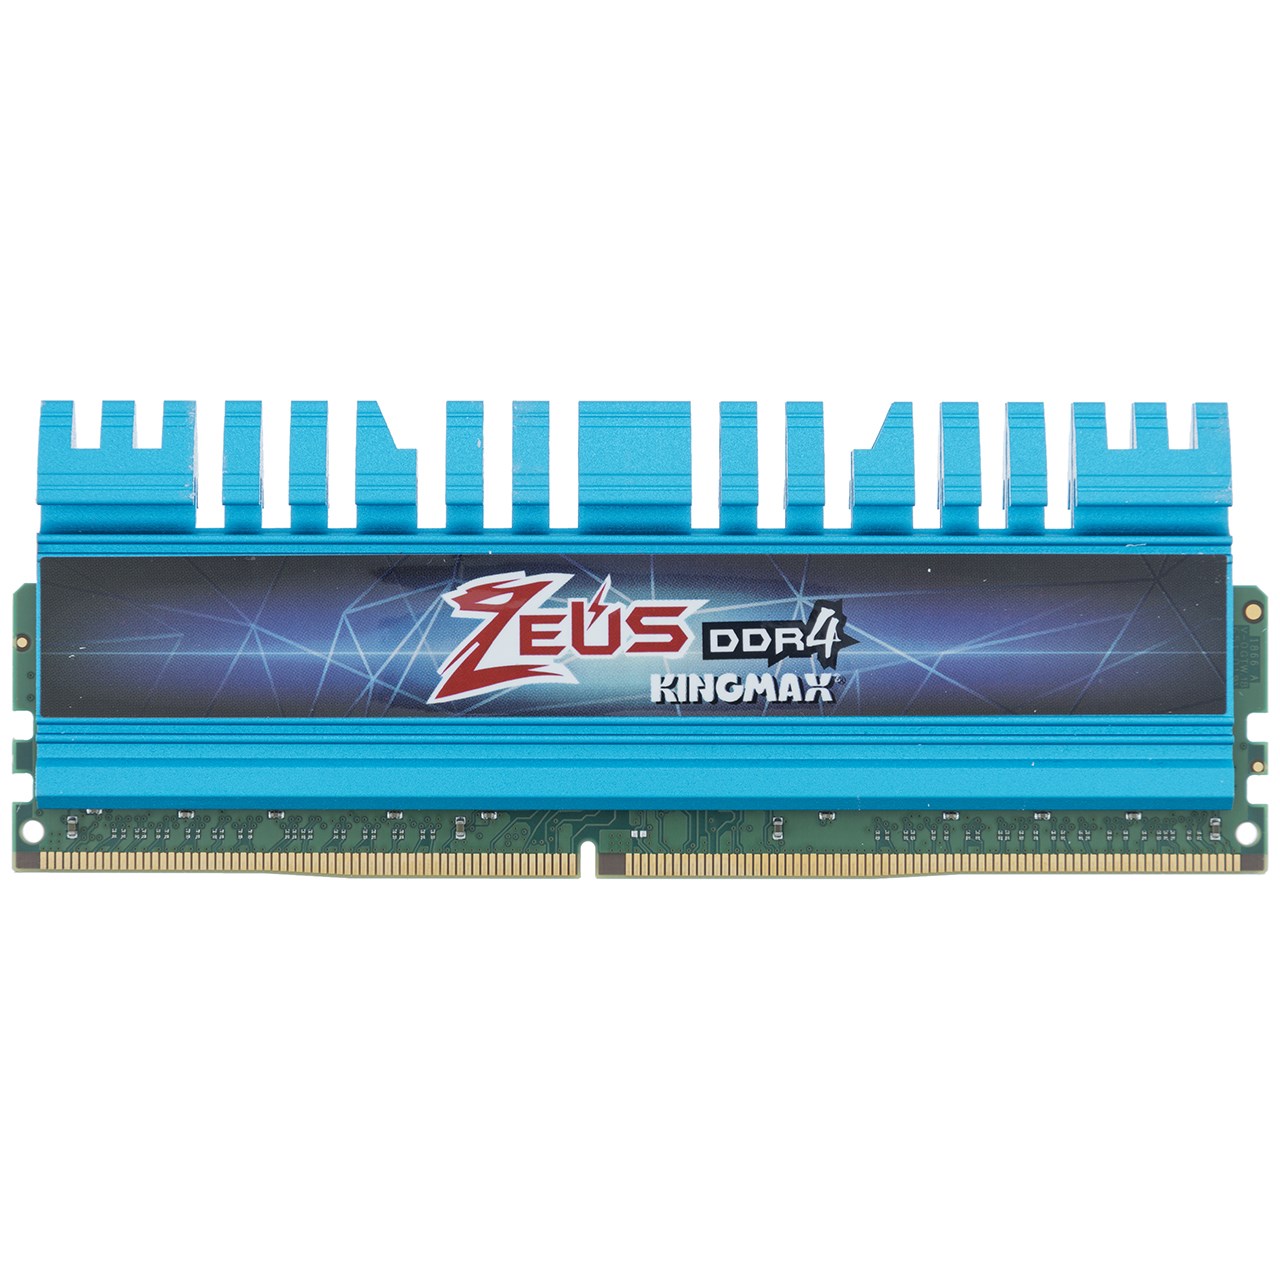 رم دسکتاپ DDR4 تک کاناله 3000 مگاهرتز CL16 کینگ مکس مدل Zeus ظرفیت 16 گیگابایت